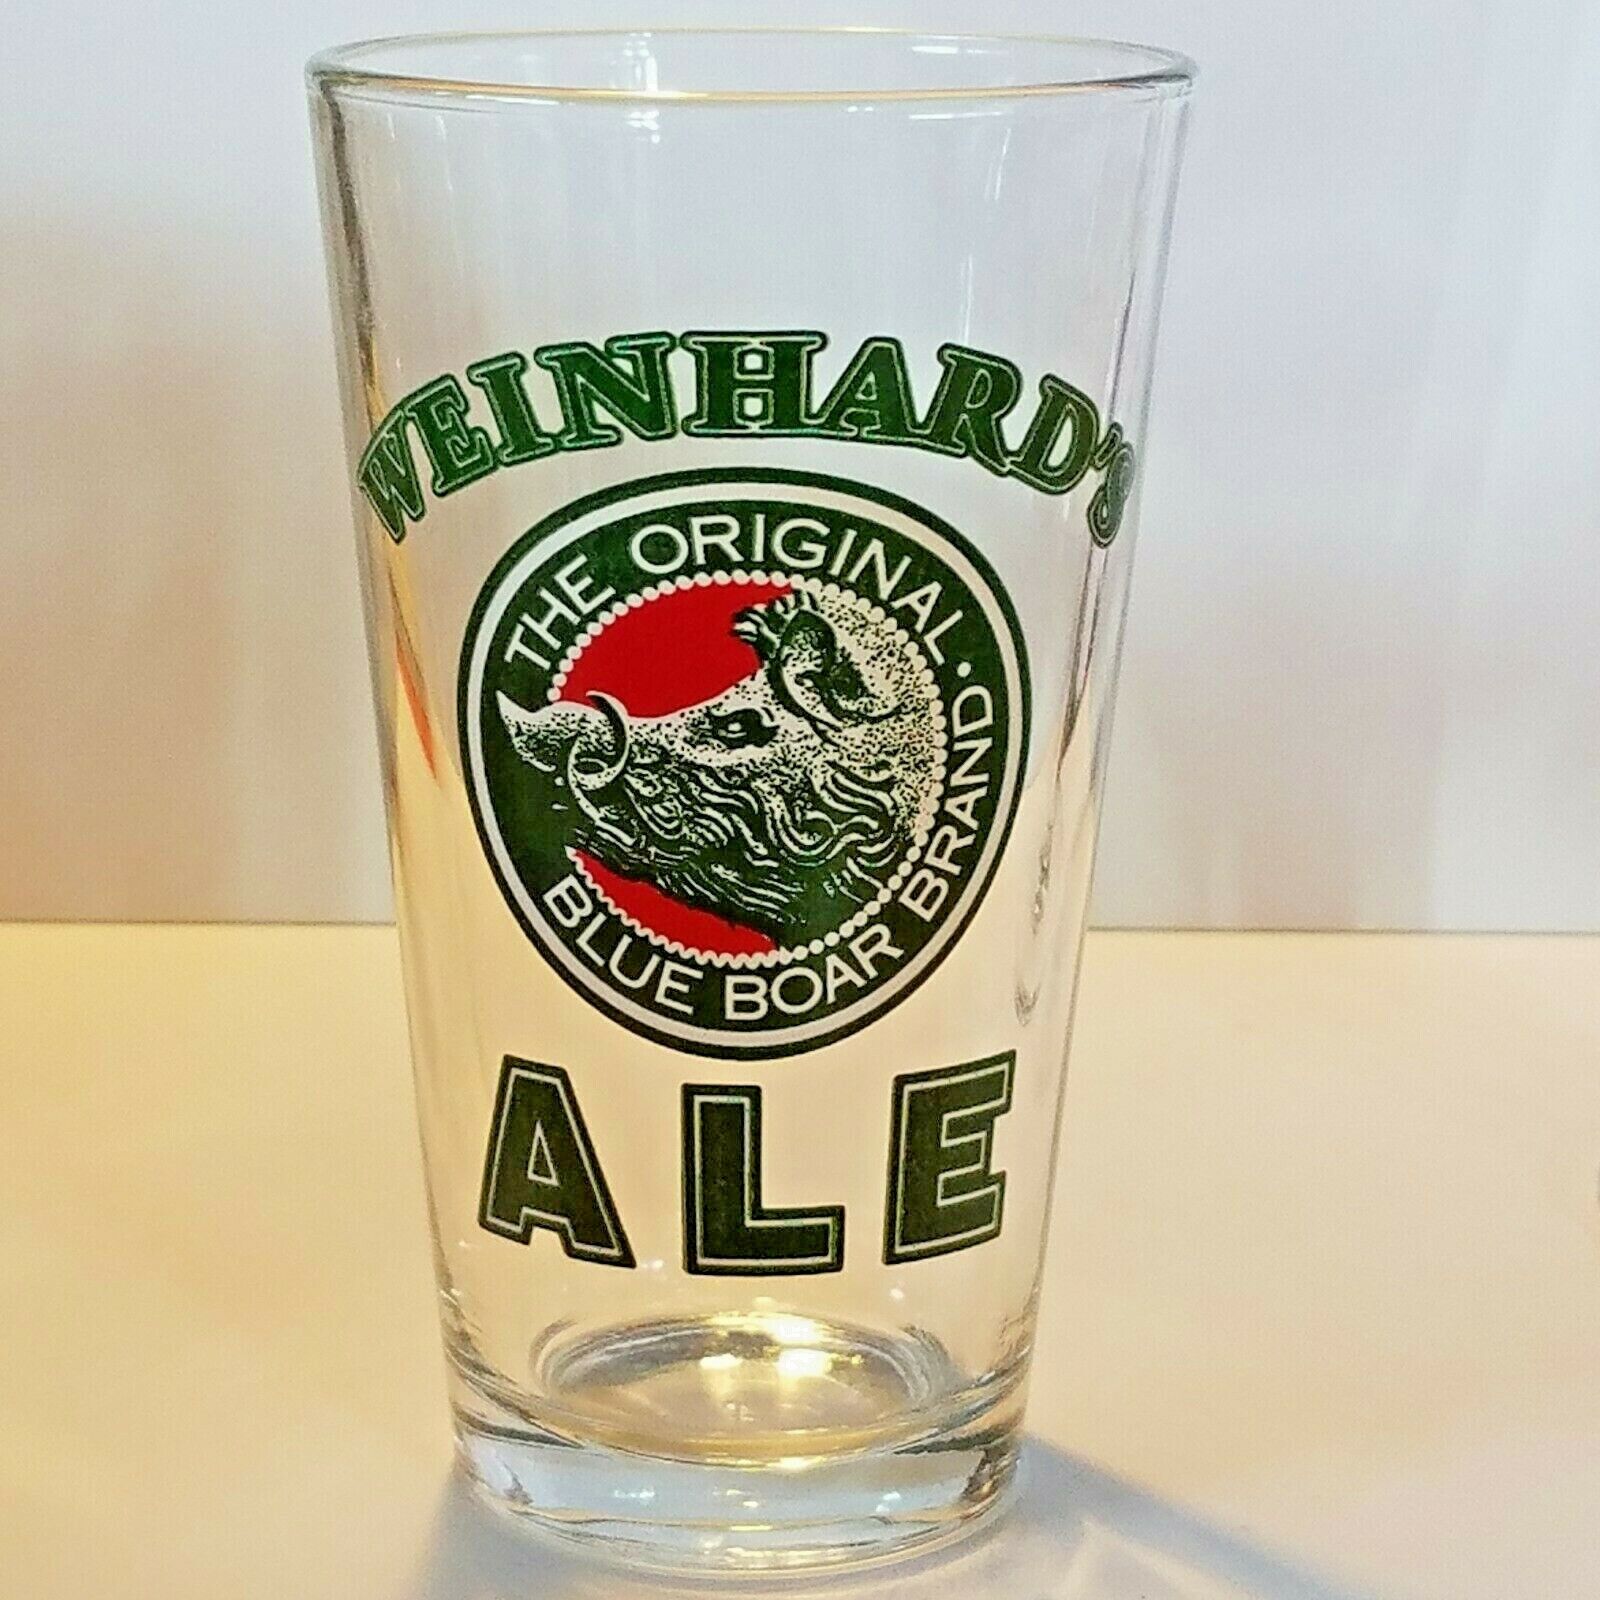 Weinhard's Ale Blue Boar Brand Bar Pub Glass 16 oz 5 7/8